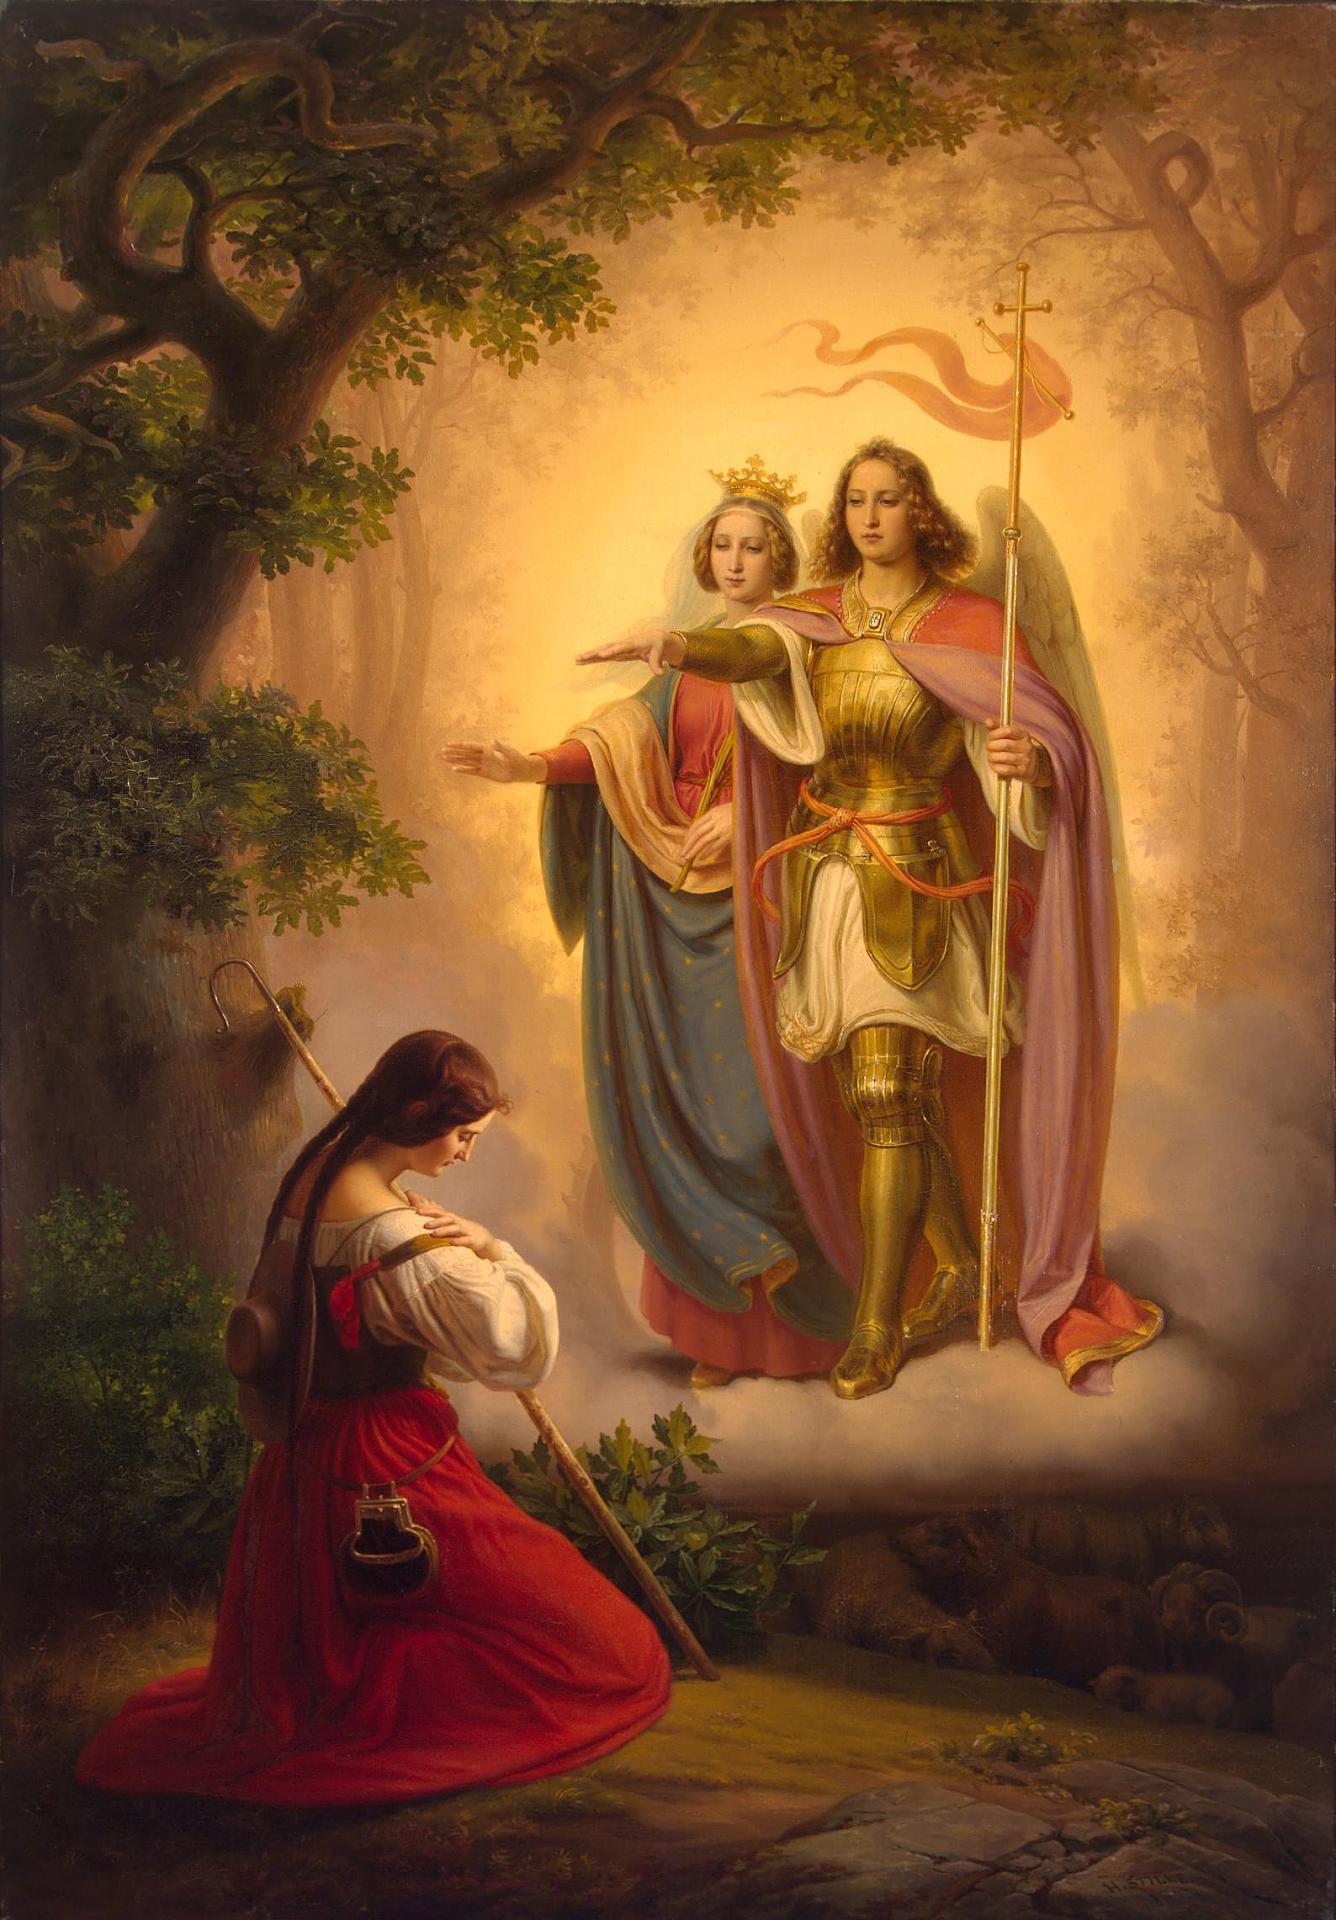 Η εμφάνιση της Αγίας Αικατερίνης και του Αρχάγγελου Μιχαήλ στην Ιωάννα της Λωρραίνης, Χέρμαν Στίλκε. Photo Credits: Wikimedia Commons